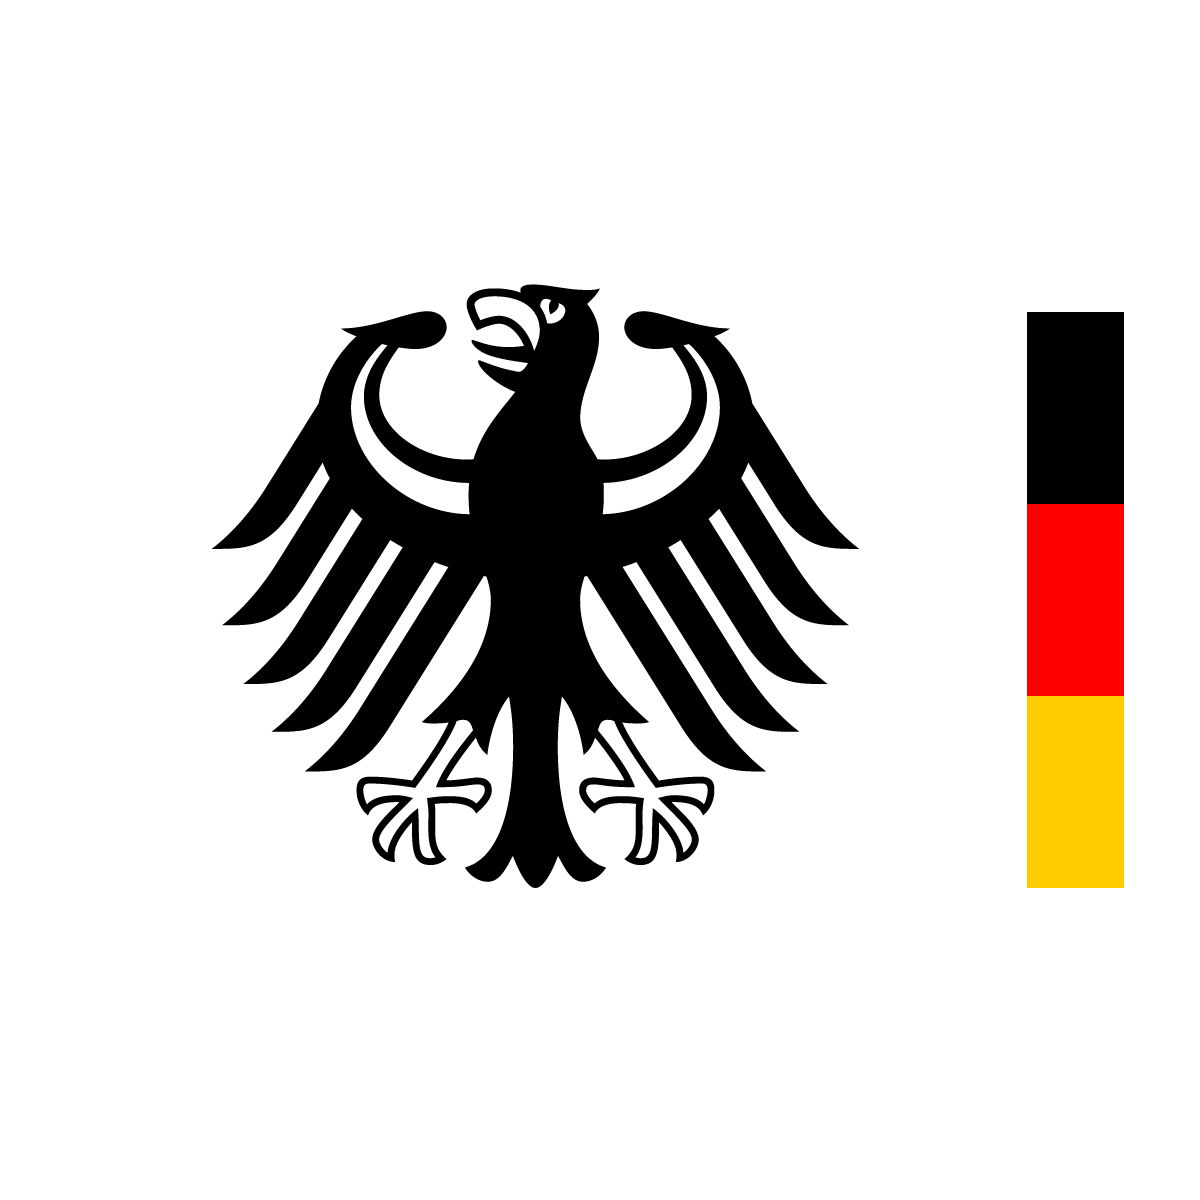 تصريح مفوضة حقوق الإنسان الألمانية أمتسبيرج بشأن تشديد التشريعات المناهضة للمثلية الجنسية في العراق